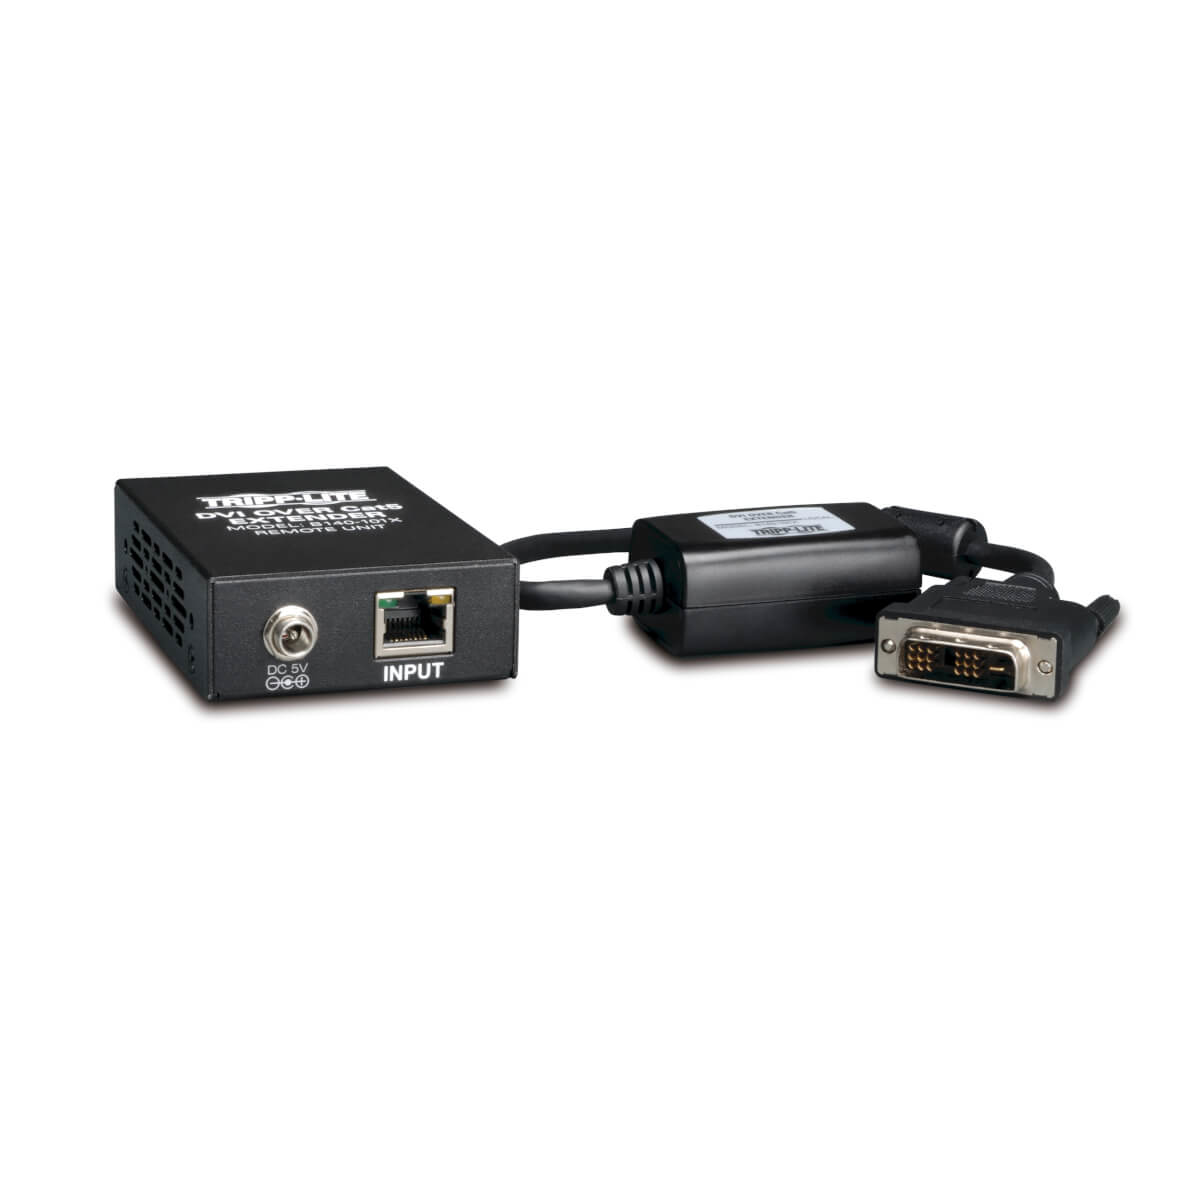 Tripp Lite B140-101X Juego Extensor Activo DVI sobre Cat5 y Cat6, Transmisor y Receptor Estilo Caja para Video, Hasta 61 m [200 pies], TAA